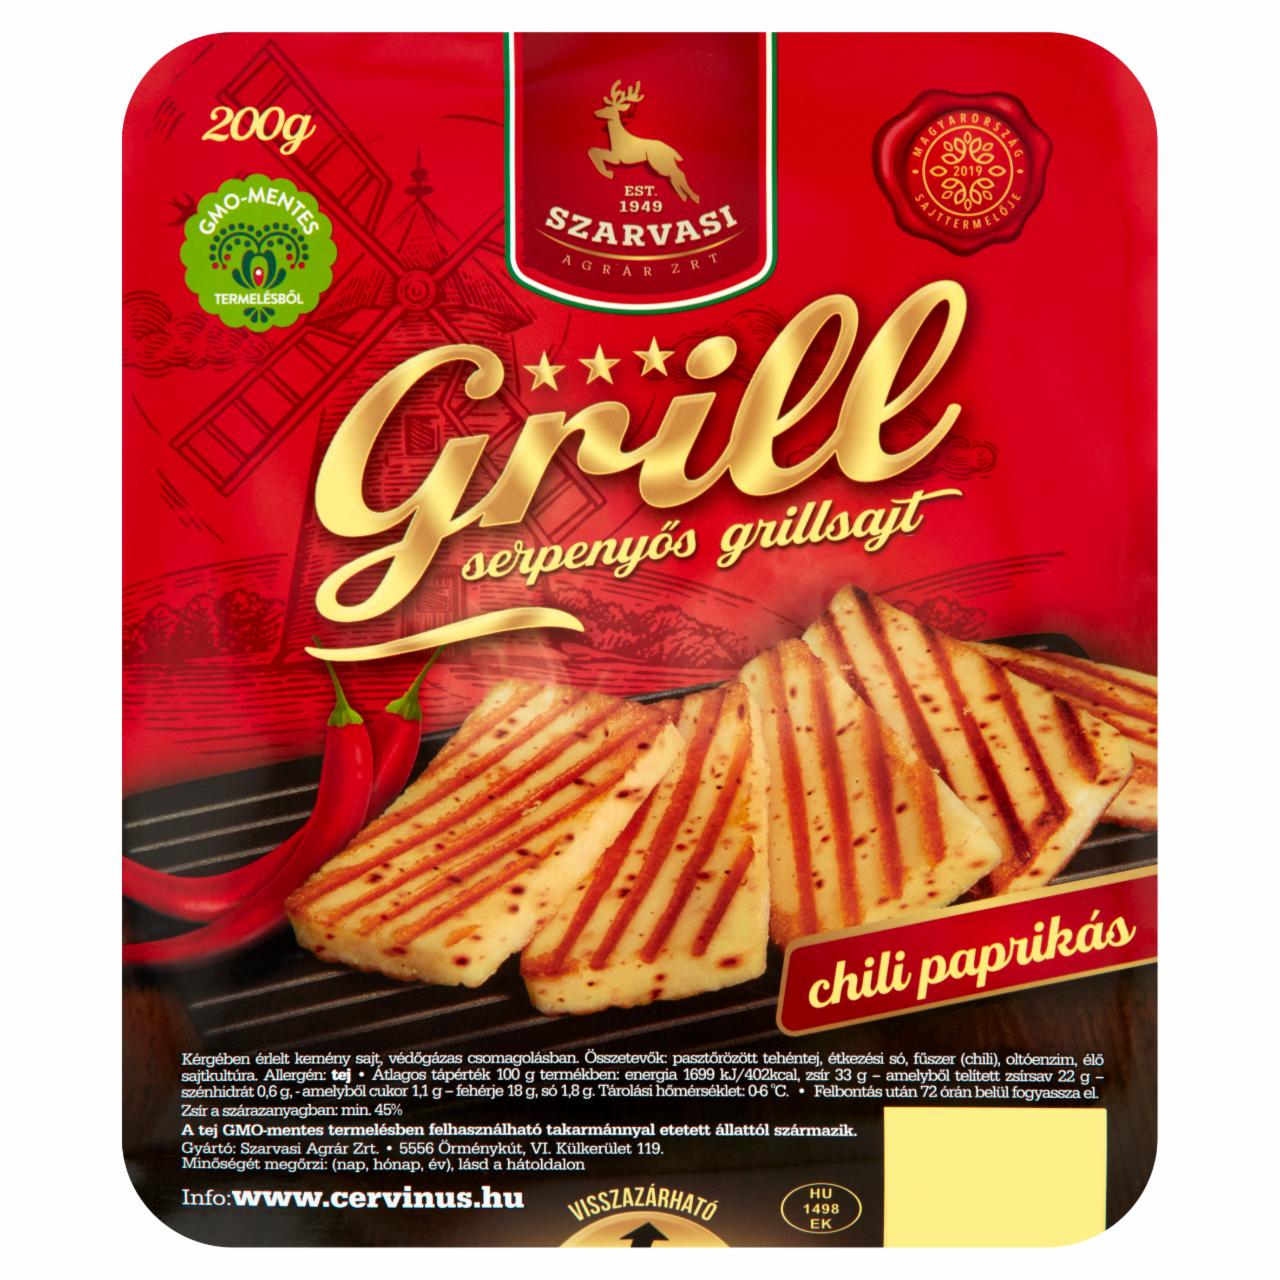 Képek - Szarvasi Grill chili paprikás serpenyős grillsajt 200 g